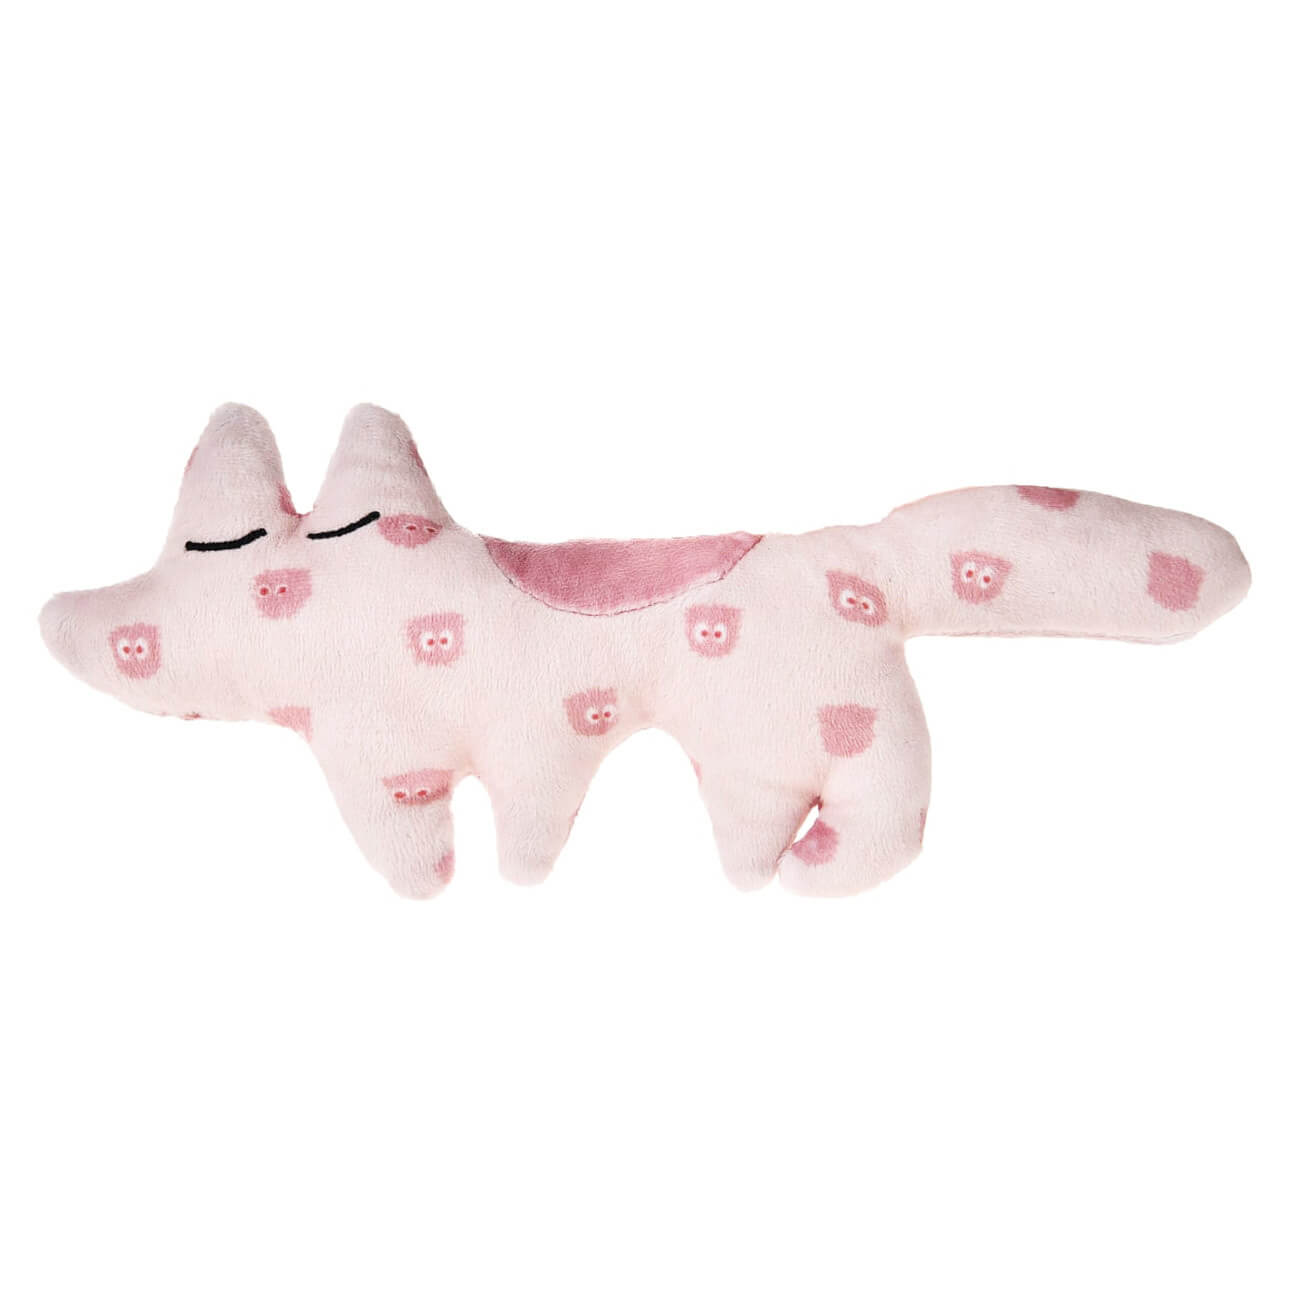 Игрушка для щенков, 23х10 см, полиэстер, розовая, Лиса, Small pet игрушка для щенков 23х10 см полиэстер розовая лиса small pet